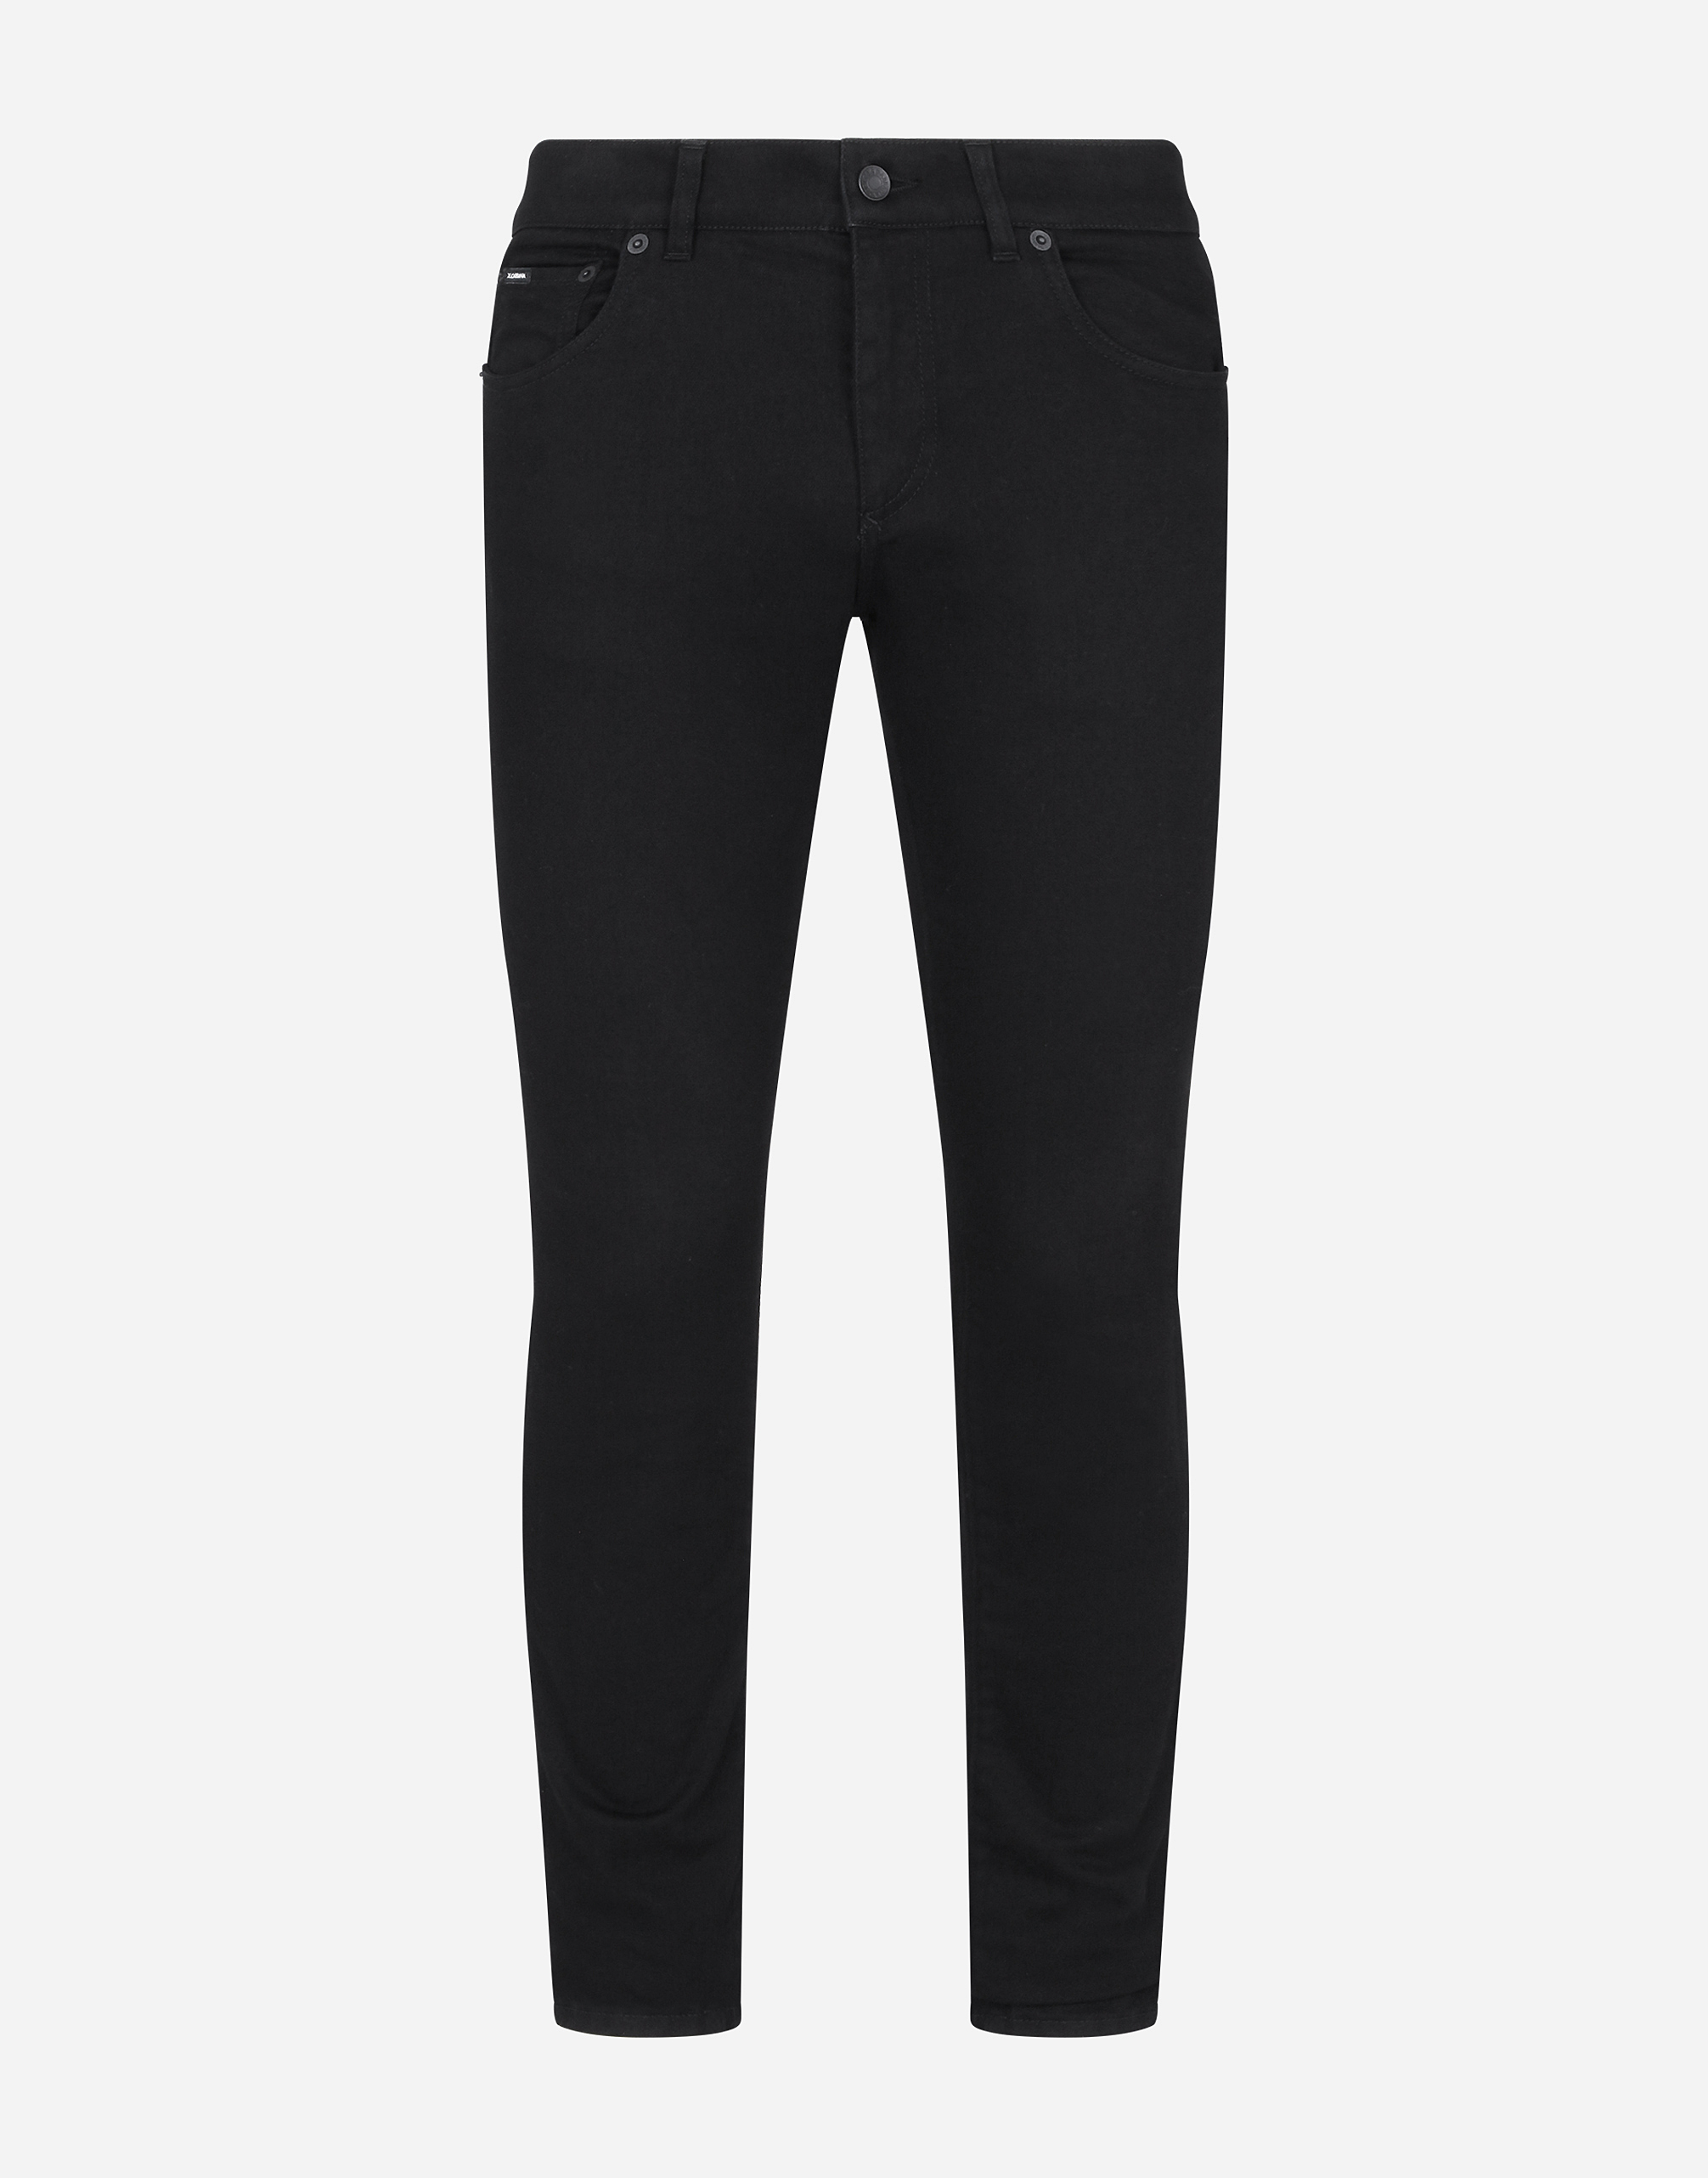 Black skinny stretch jeans with DG logo in Black